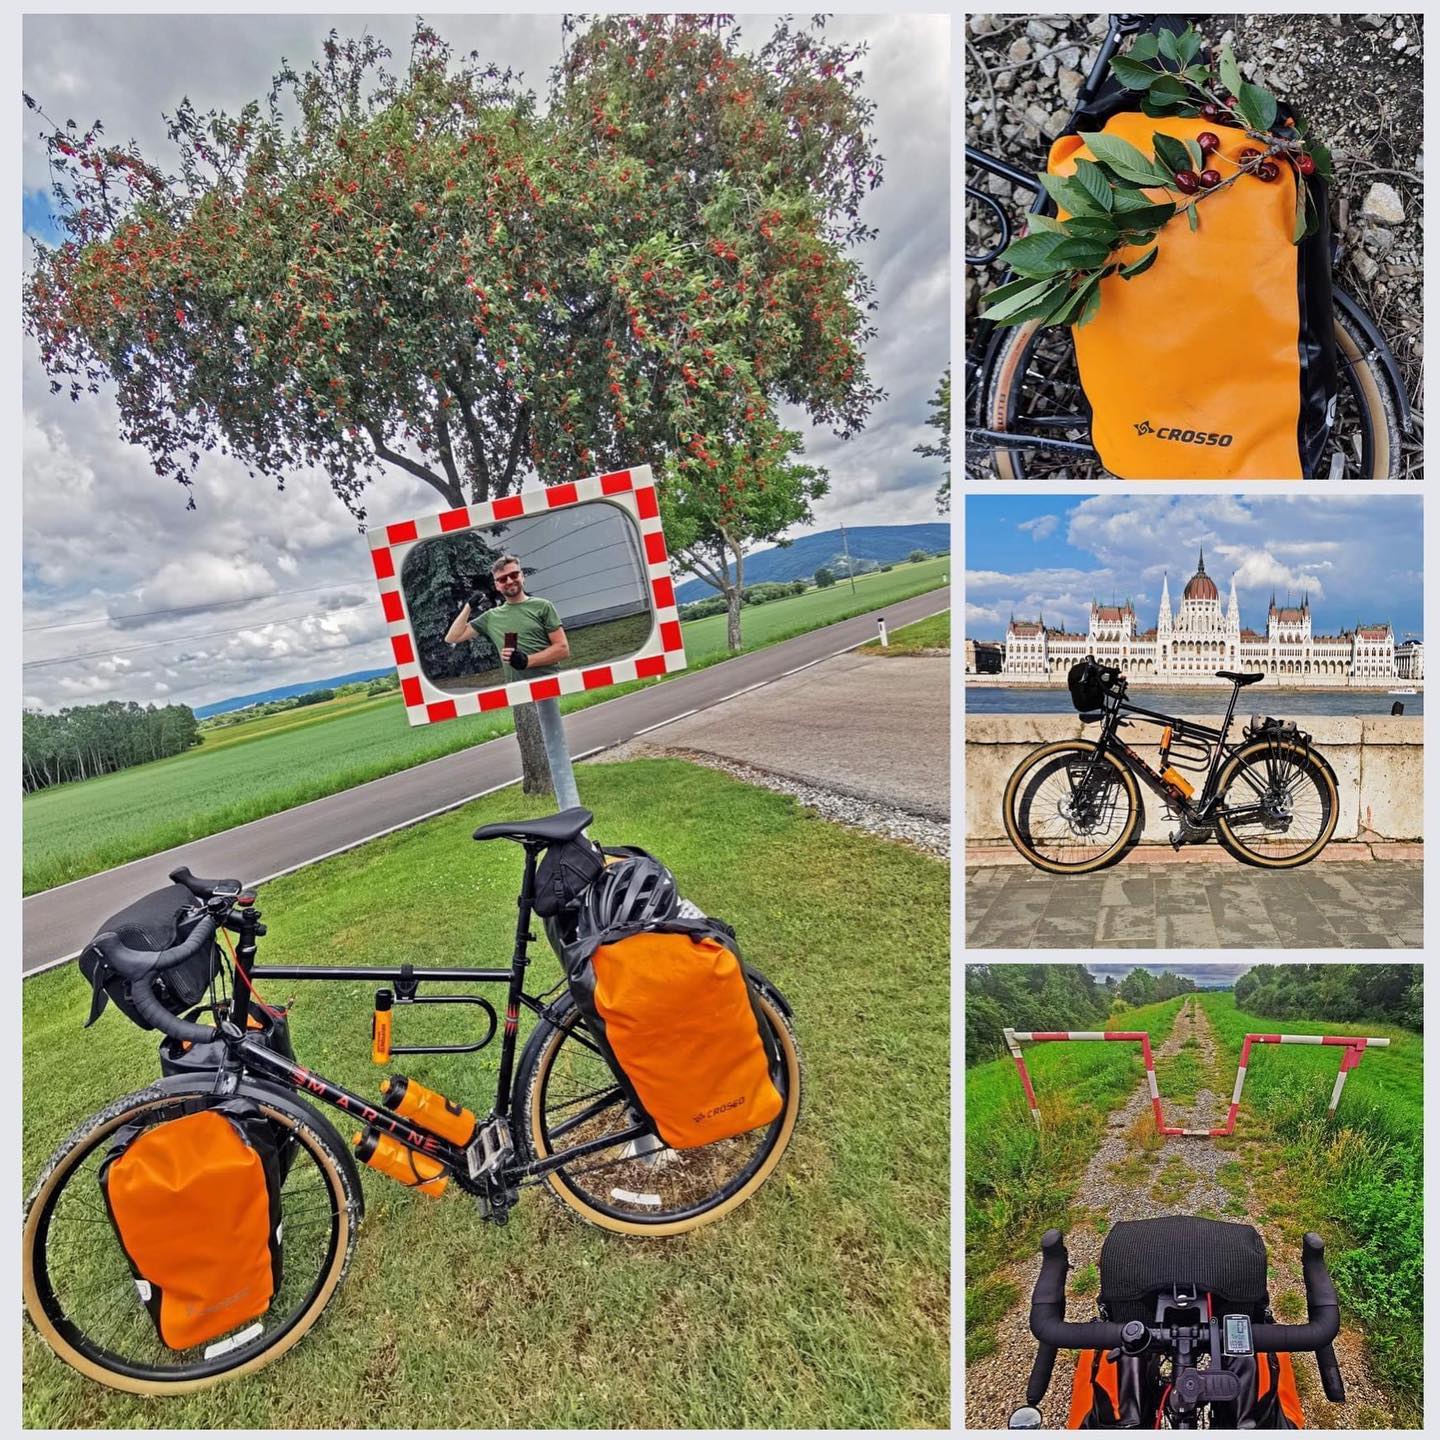 Łukasz właśnie przejechał z Krakowa do Budapesztu! A jak mija Twój długi weekend czerwcowy?

Podzielcie się swoimi weekendowymi fotkami oznaczając @crossobags na Stories lub na zdjęciach - ciekawi jesteśmy, co i gdzie robicie!

Fot. Łukasz Studnicki

#crossobags #tripswithcrosso #rowerowo #roweremprzezświat #roweremprzezpolske #rowerlover #roweremnajlepiej #dlugiweekend #długiweekend